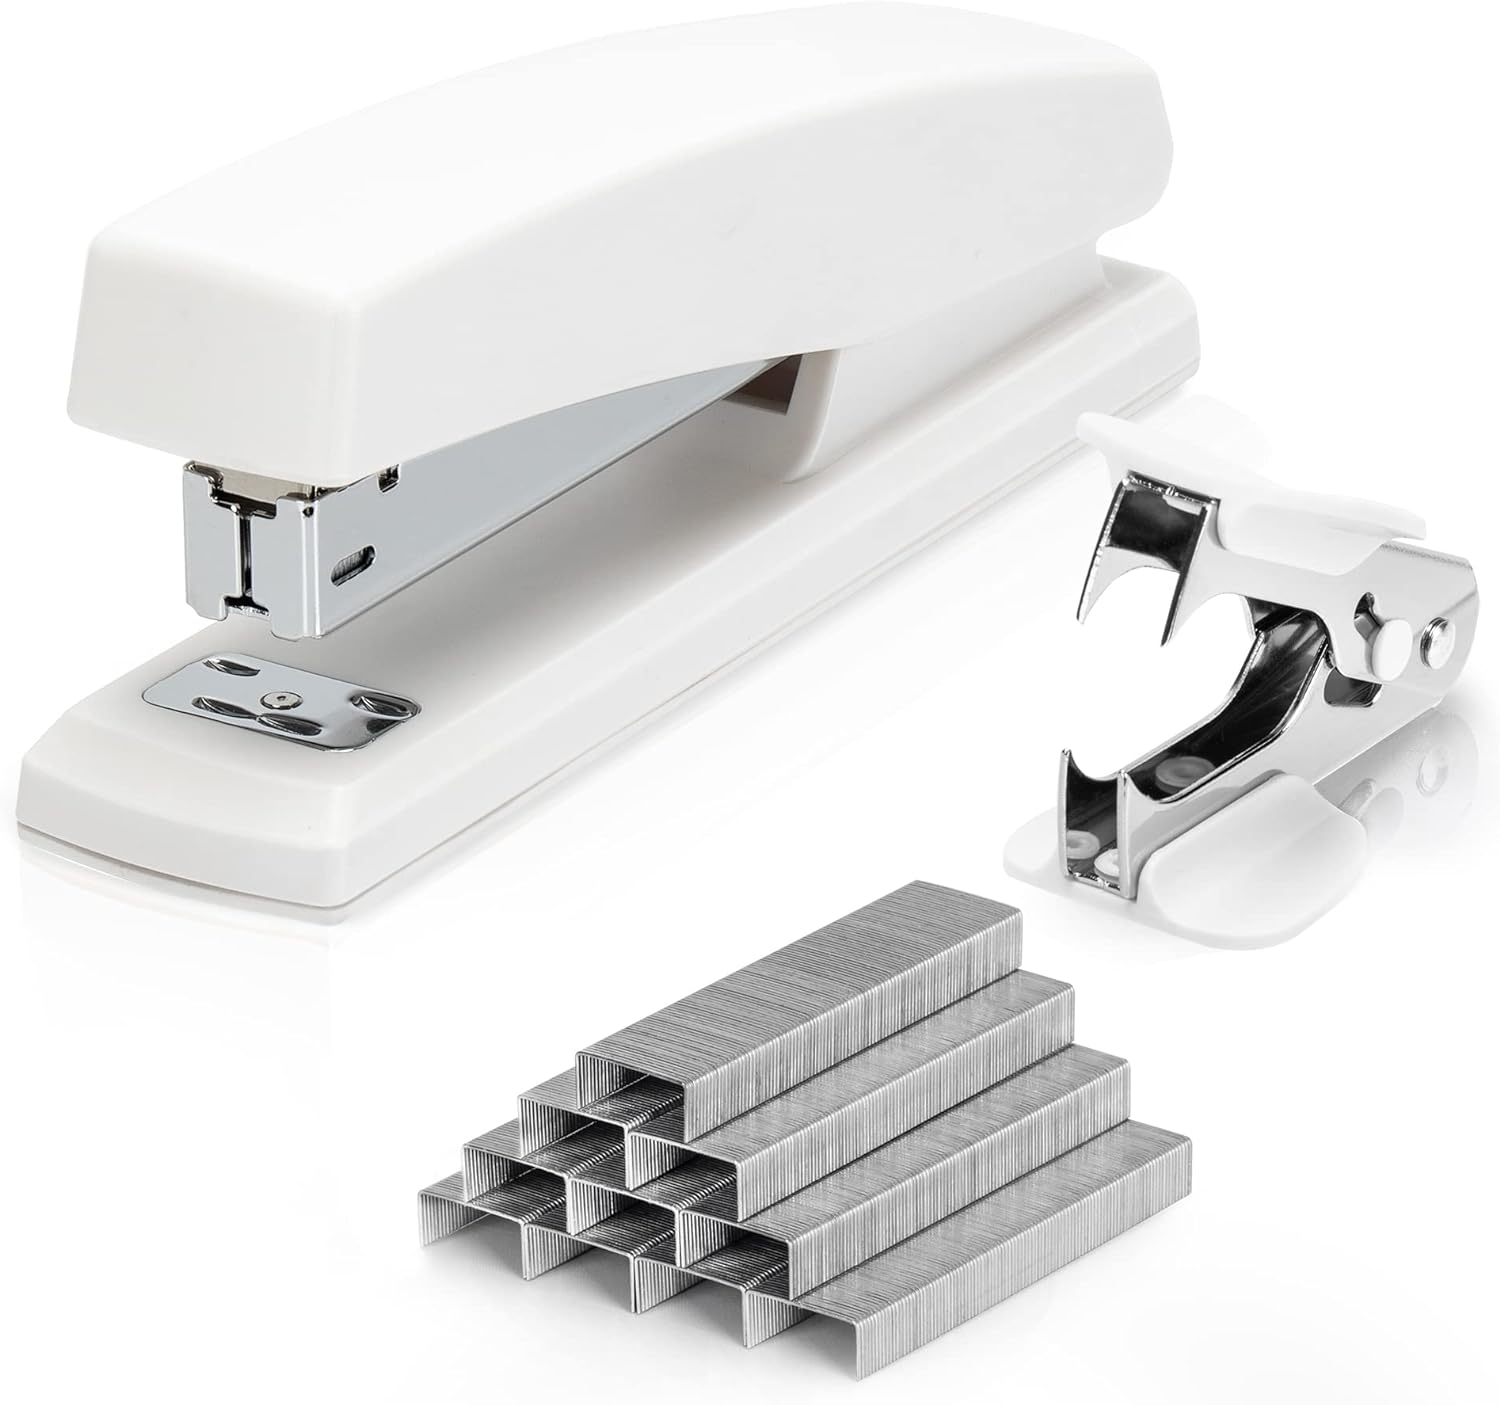 Deli Stapler, Desktop Stapler, Office Stapler, 25 Sheet Capacity, Includes 1000 Staples and Staple Remover, White